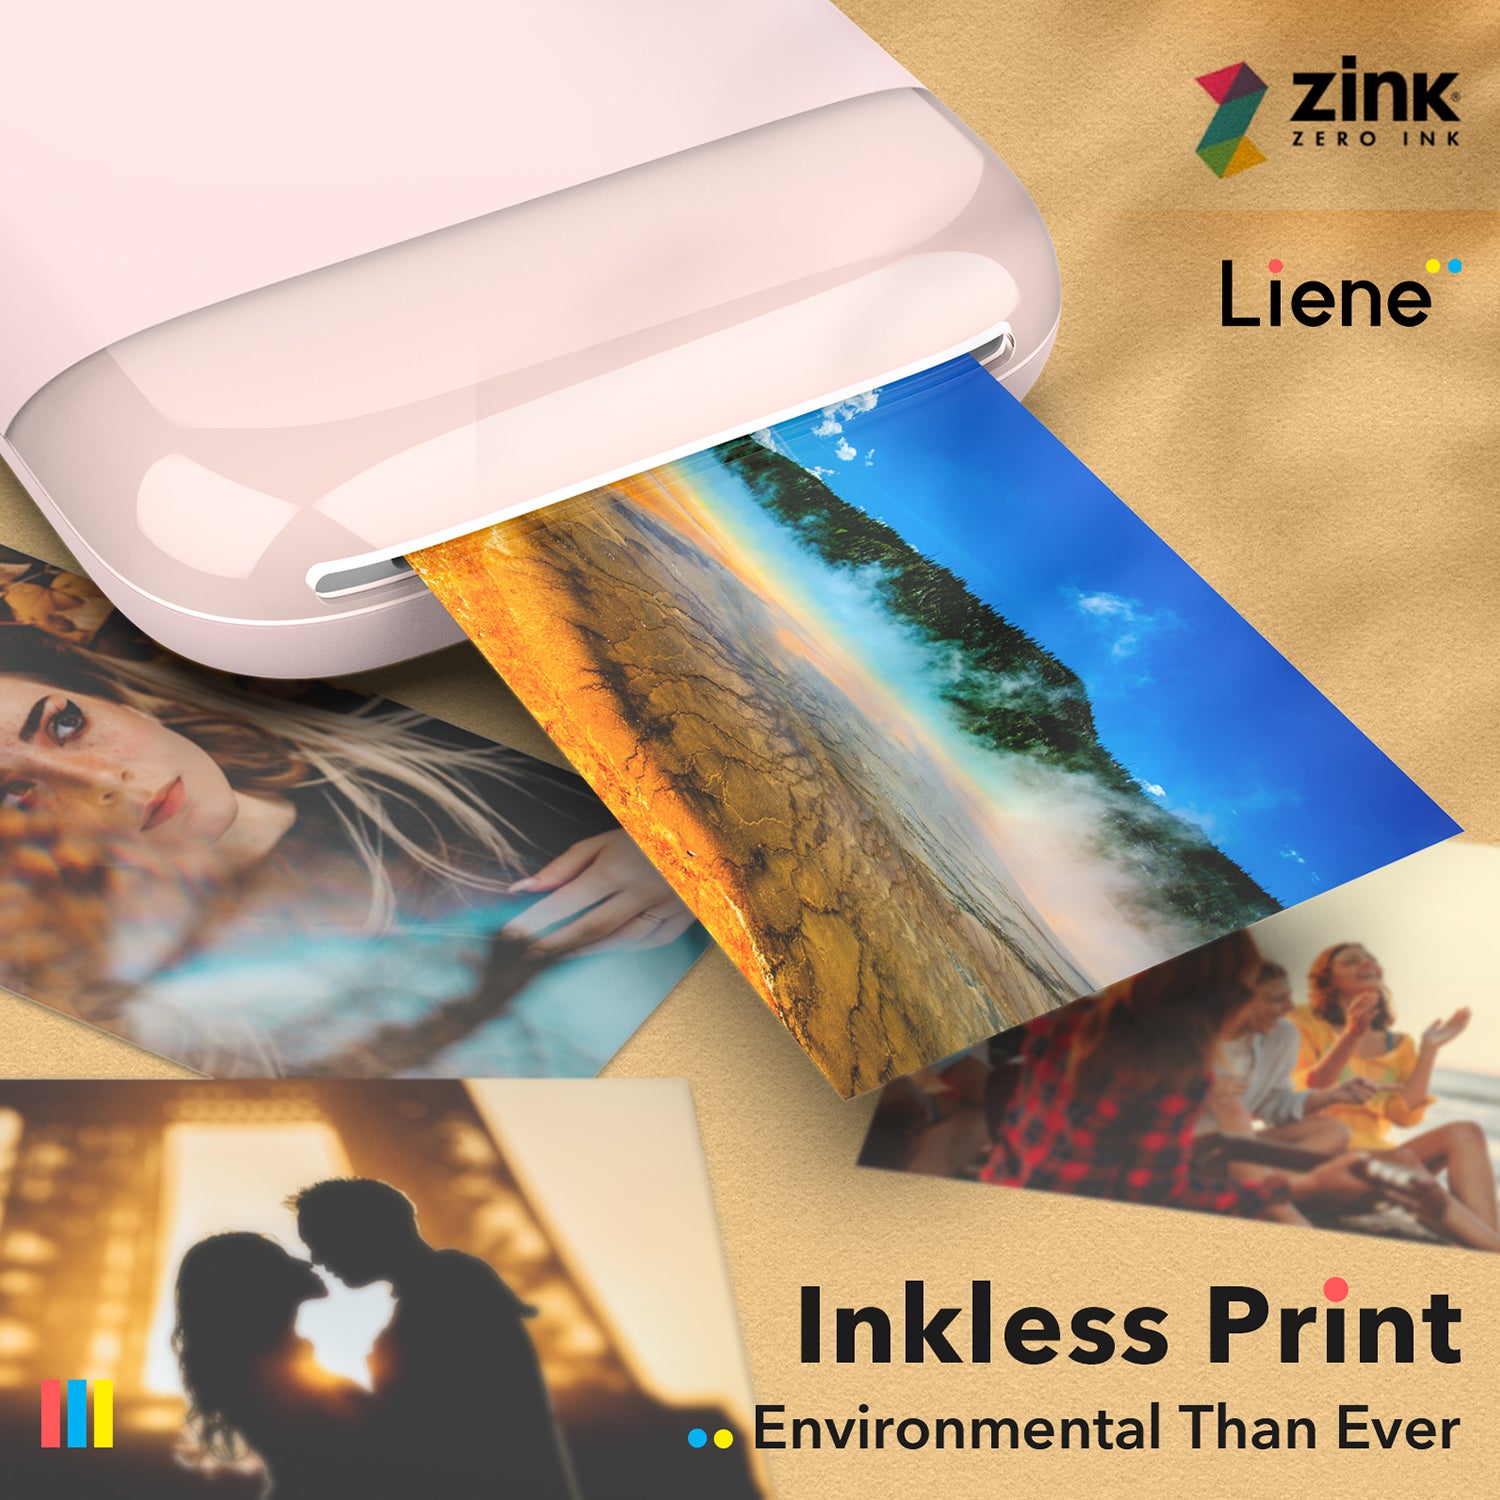 inkless photo printing